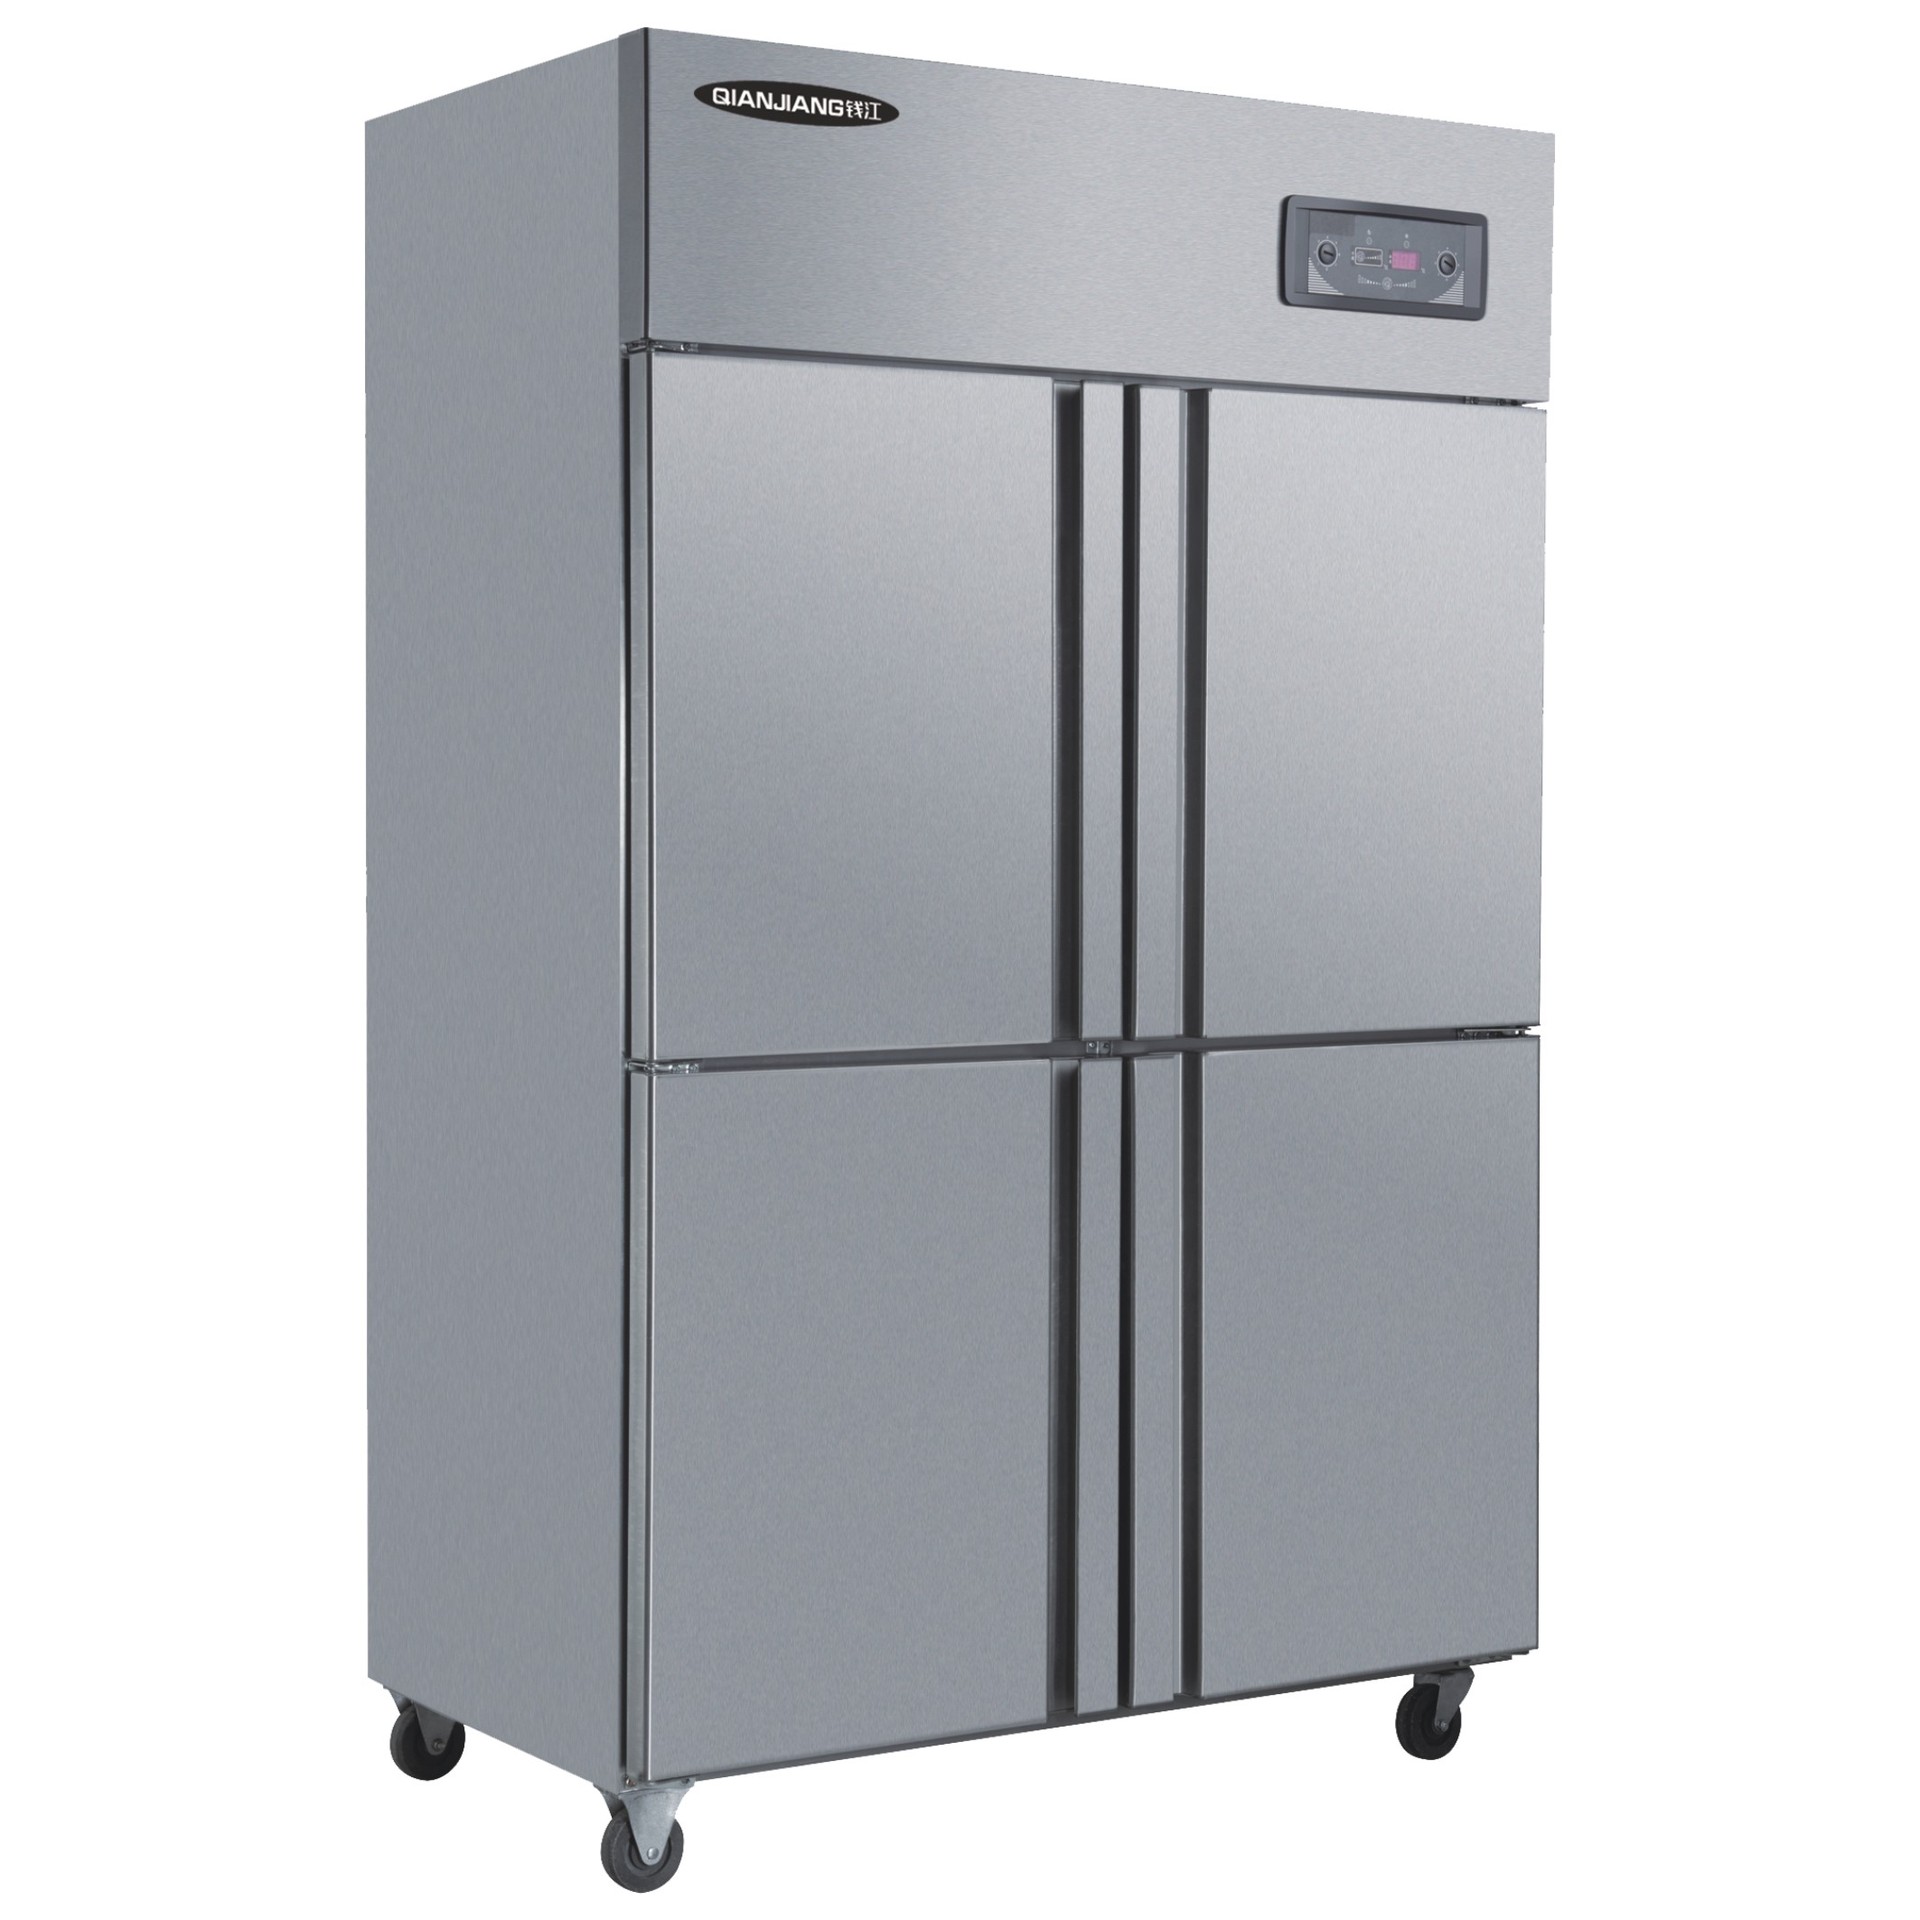 钱江四门厨房冰柜 双温商用全不锈钢冰箱 冷藏冷冻立式冷柜批发